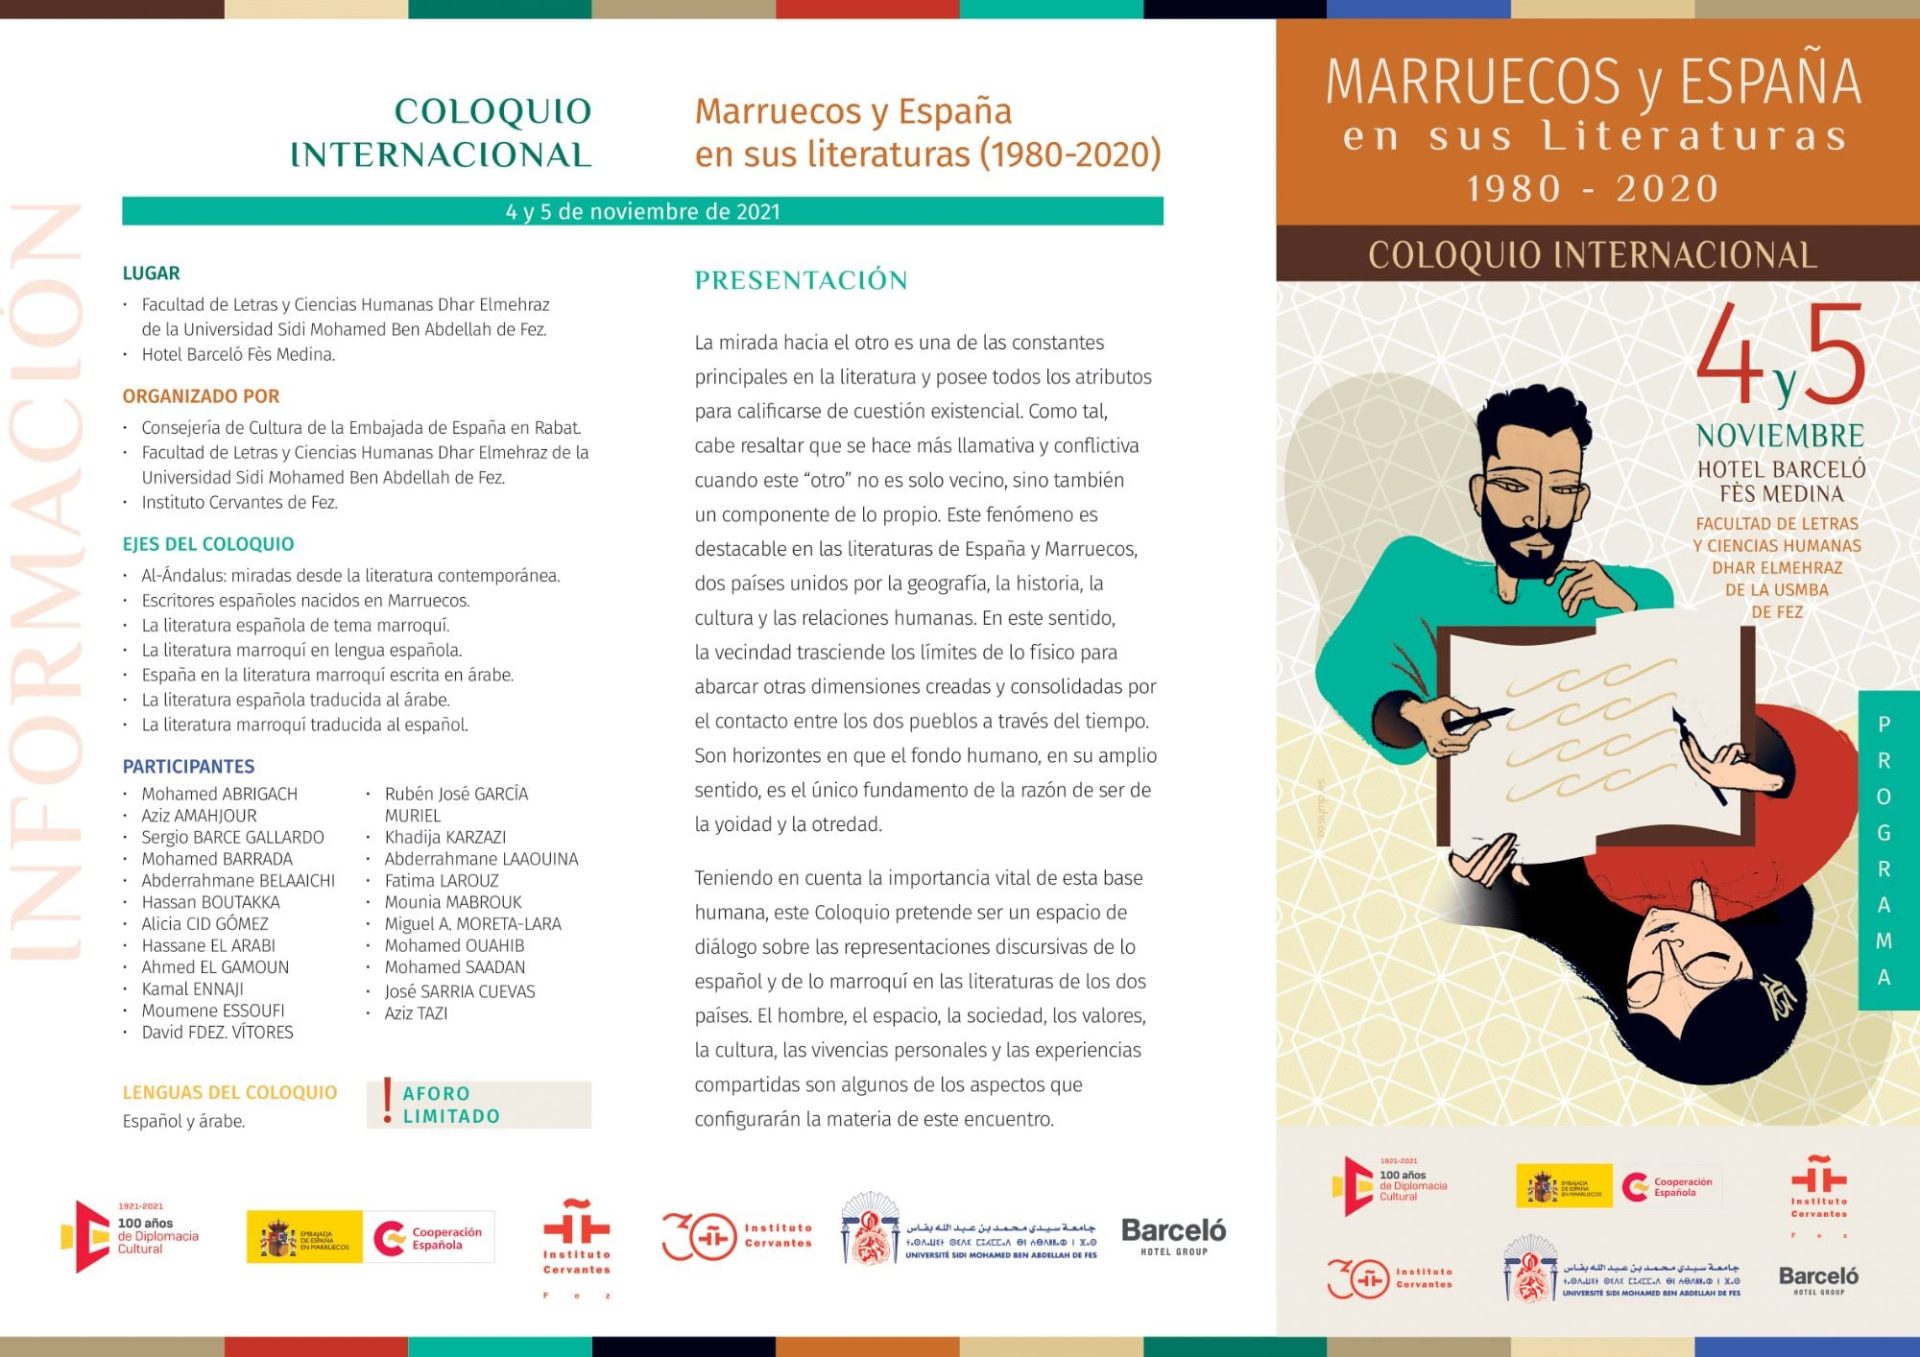 COLOQUIO INTERNACIONAL MARRUECOS Y ESPAÑA EN SUS LITERATURAS.